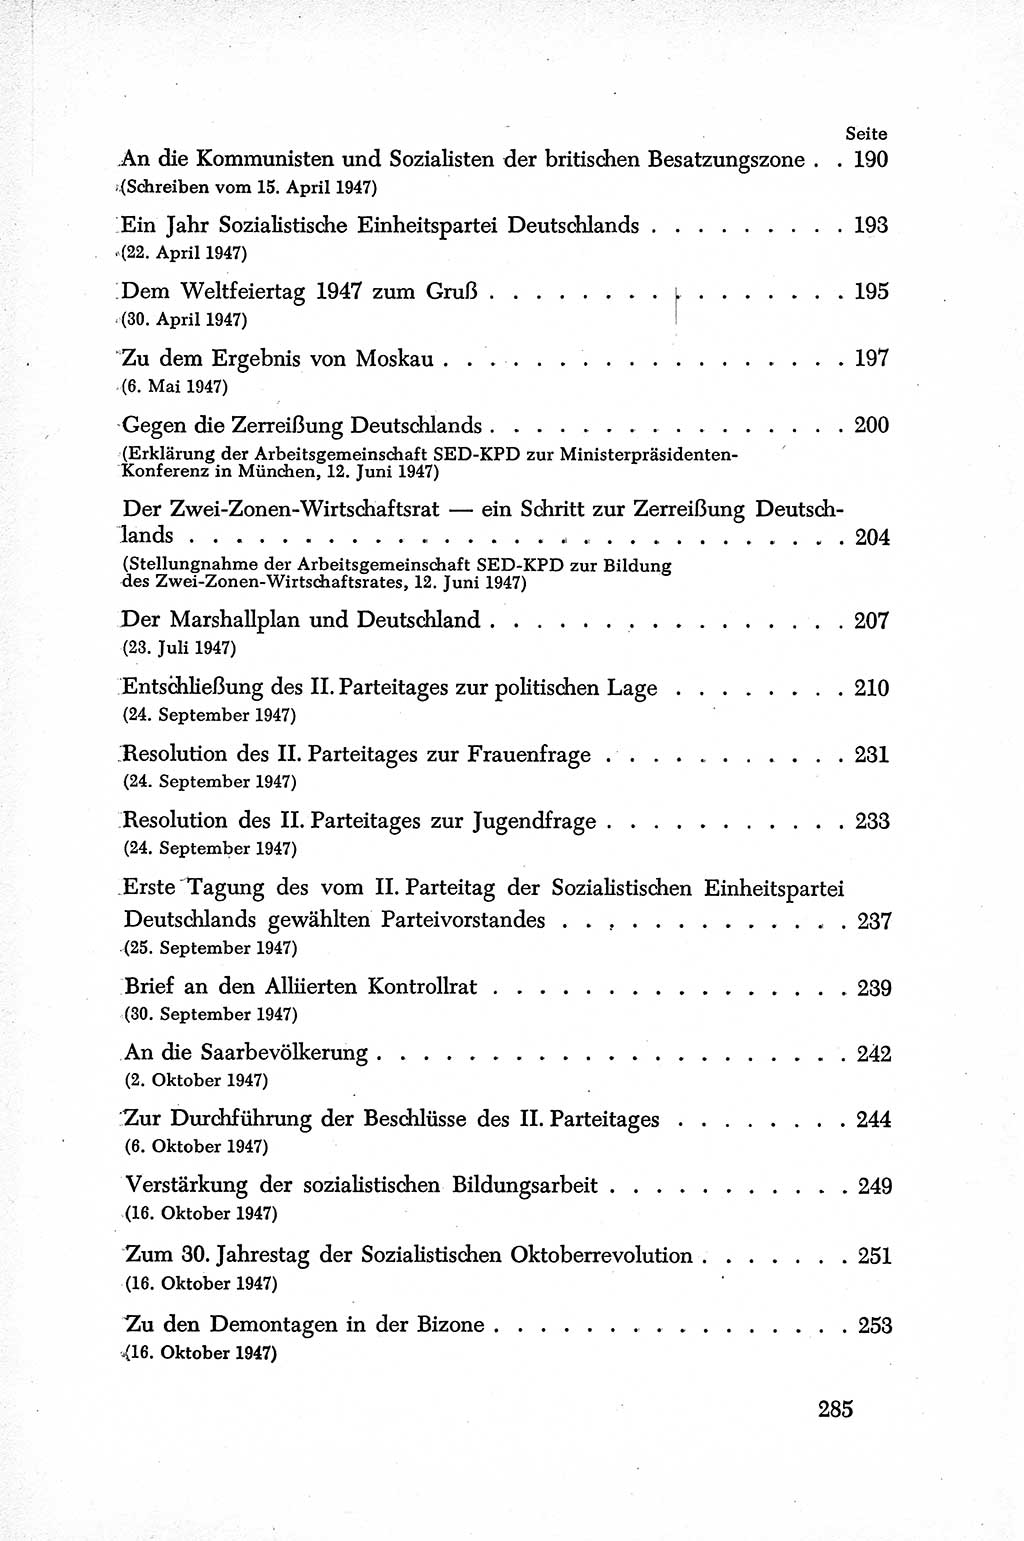 Dokumente der Sozialistischen Einheitspartei Deutschlands (SED) [Sowjetische Besatzungszone (SBZ) Deutschlands] 1946-1948, Seite 285 (Dok. SED SBZ Dtl. 1946-1948, S. 285)